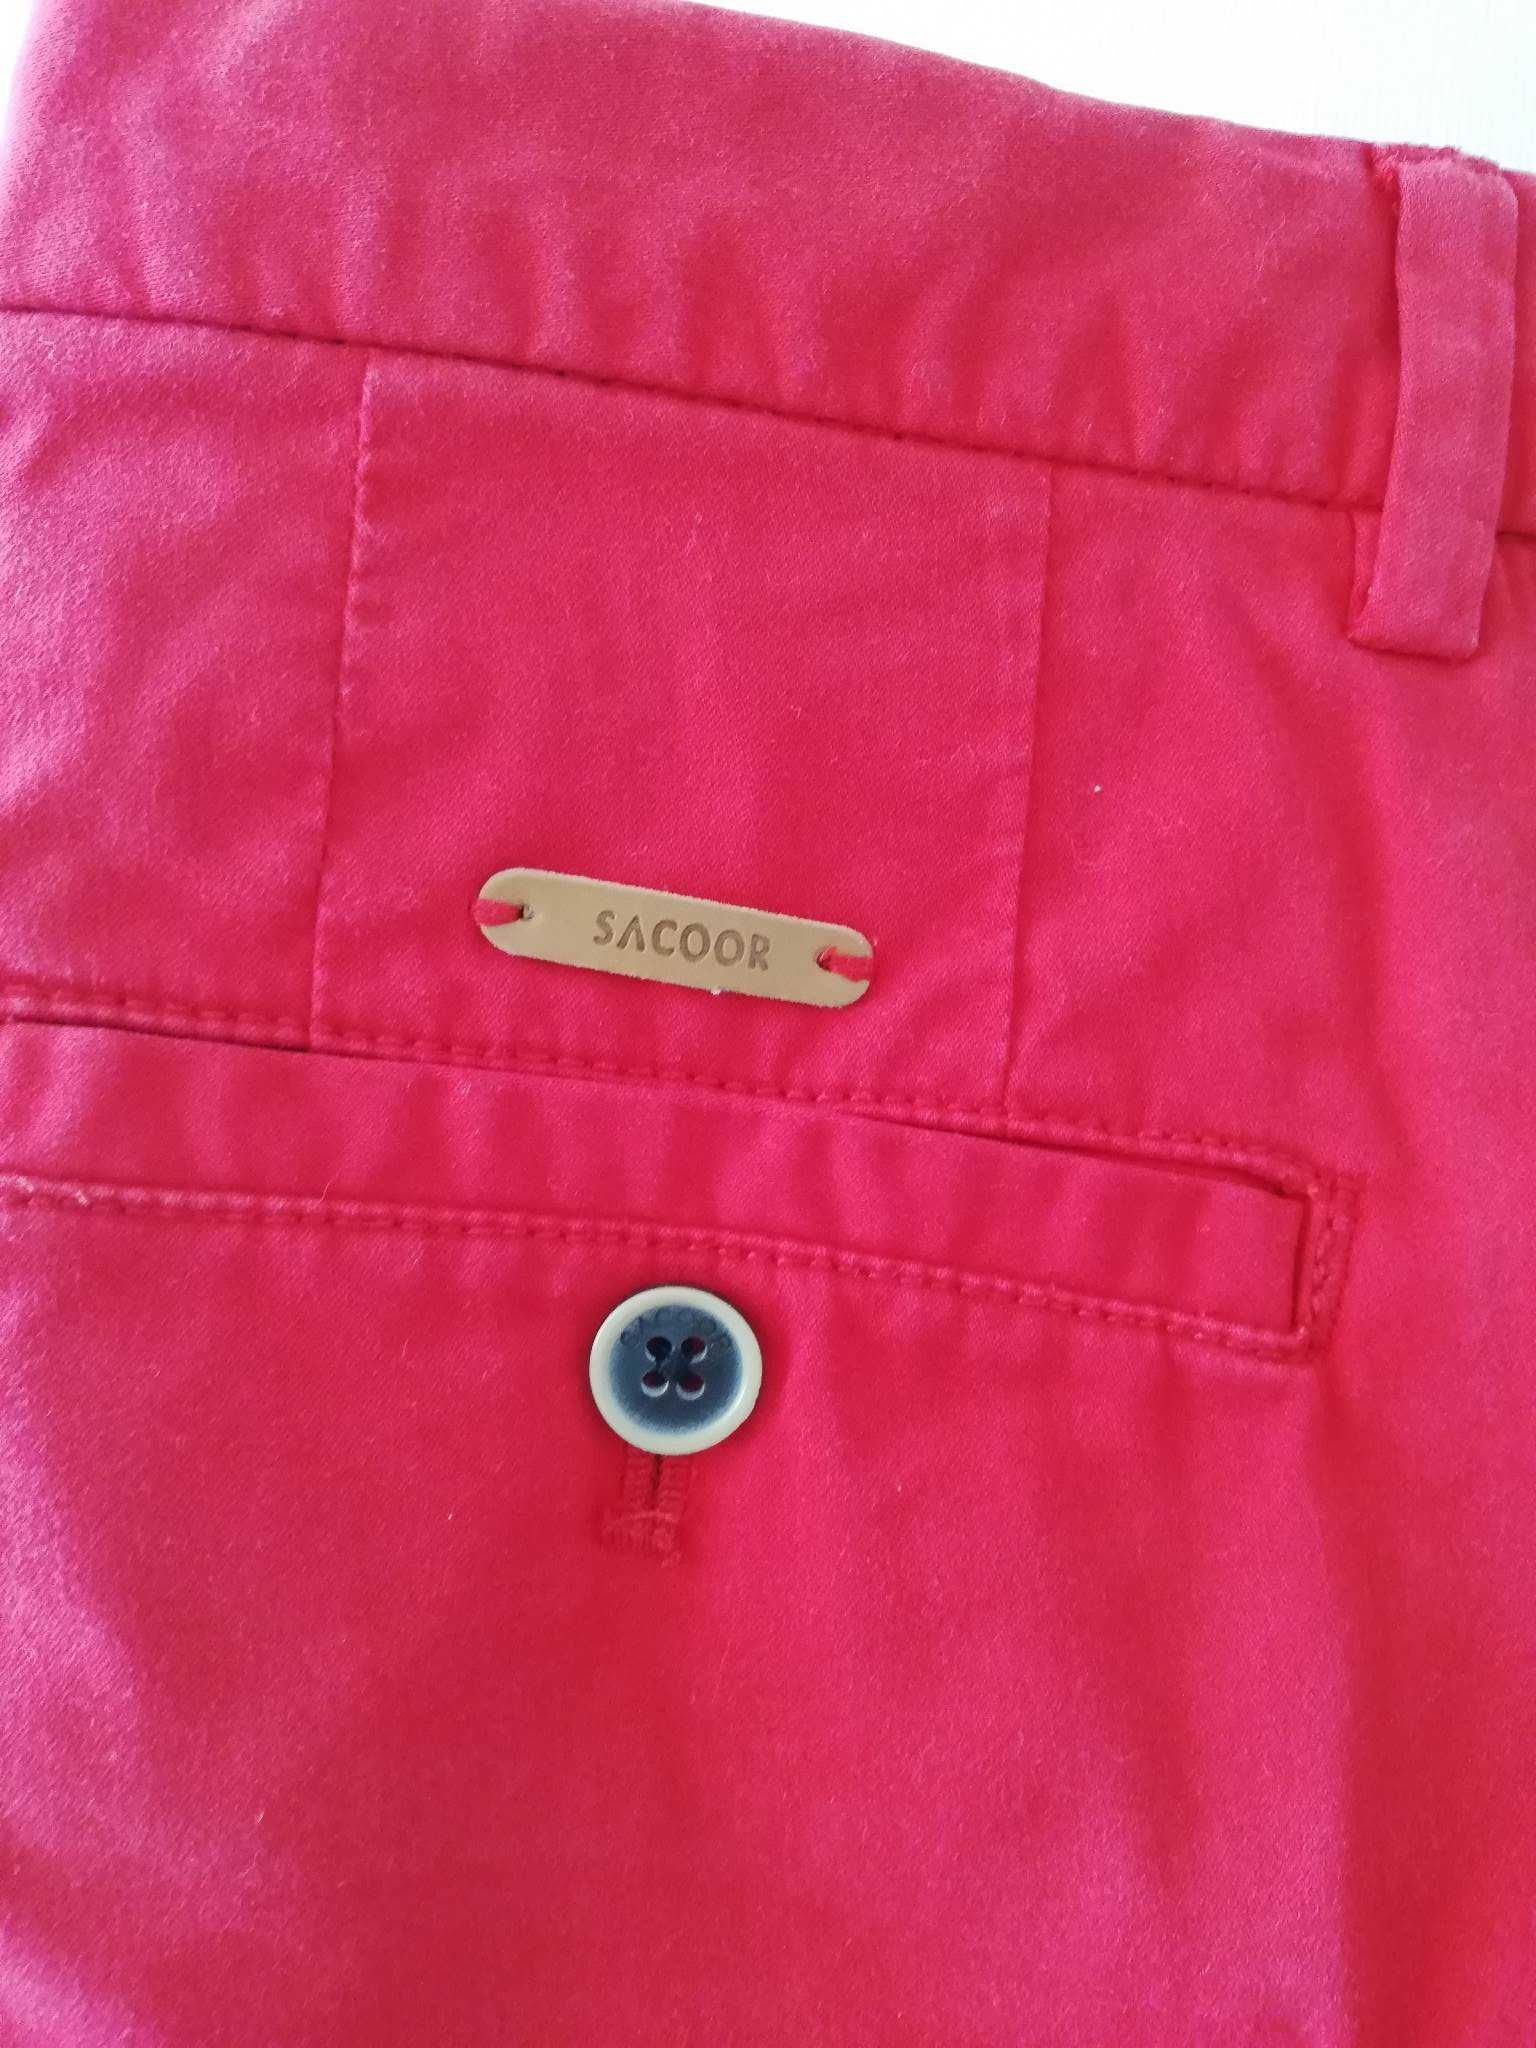 Calça chino vermelha da marca Sacoor, tamanho 10 anos